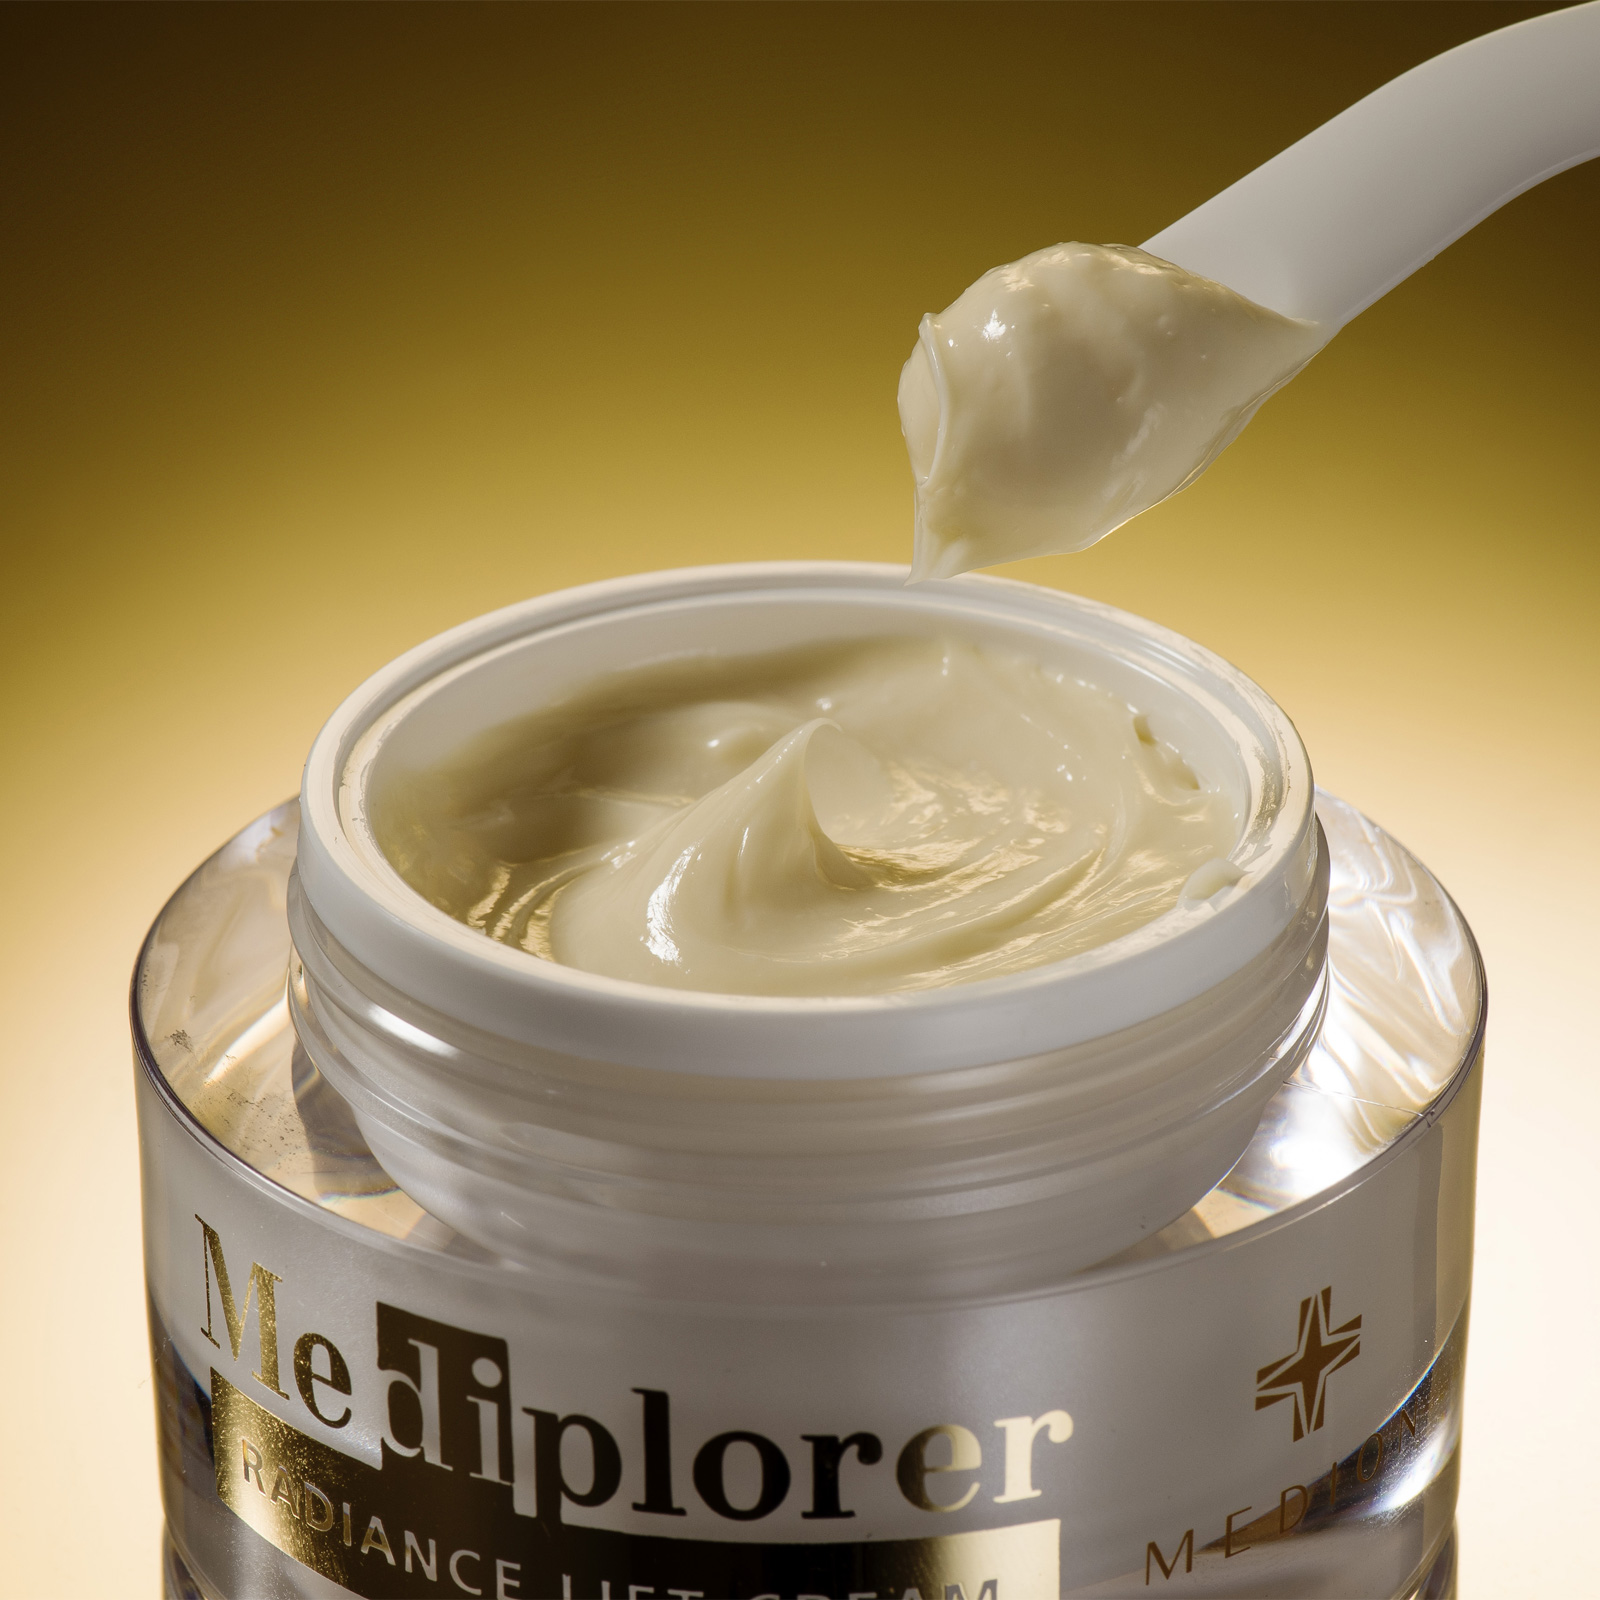 Mediplorer Radiance Lift Cream. Лифтинговый крем для лица «Сияние» Медиплорер, 50 г